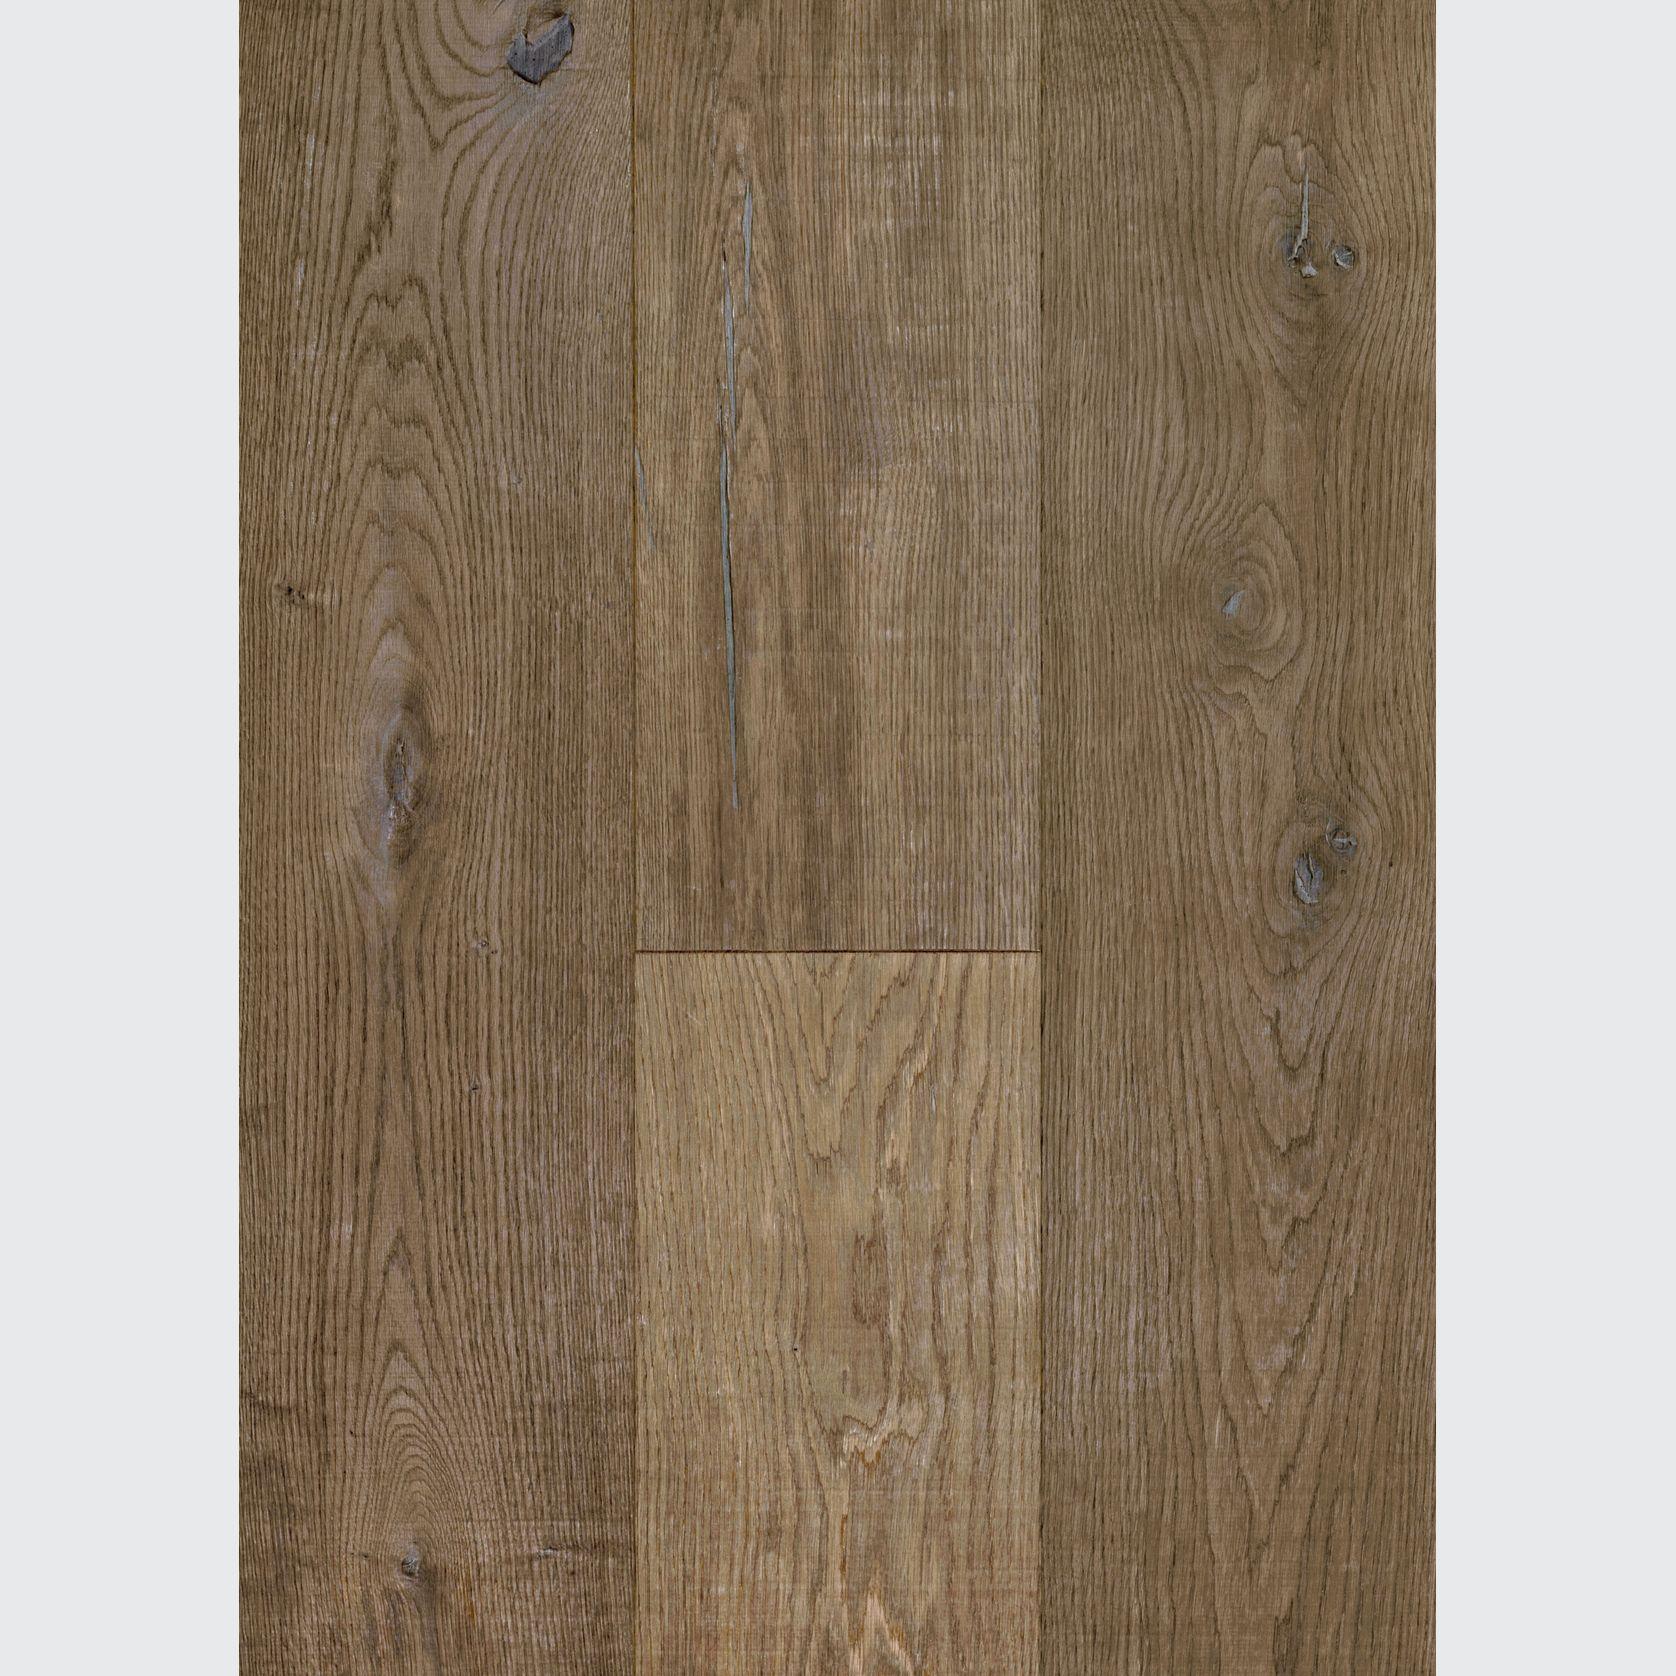 Artiste Rustic Vermeer Plank Timber Flooring gallery detail image